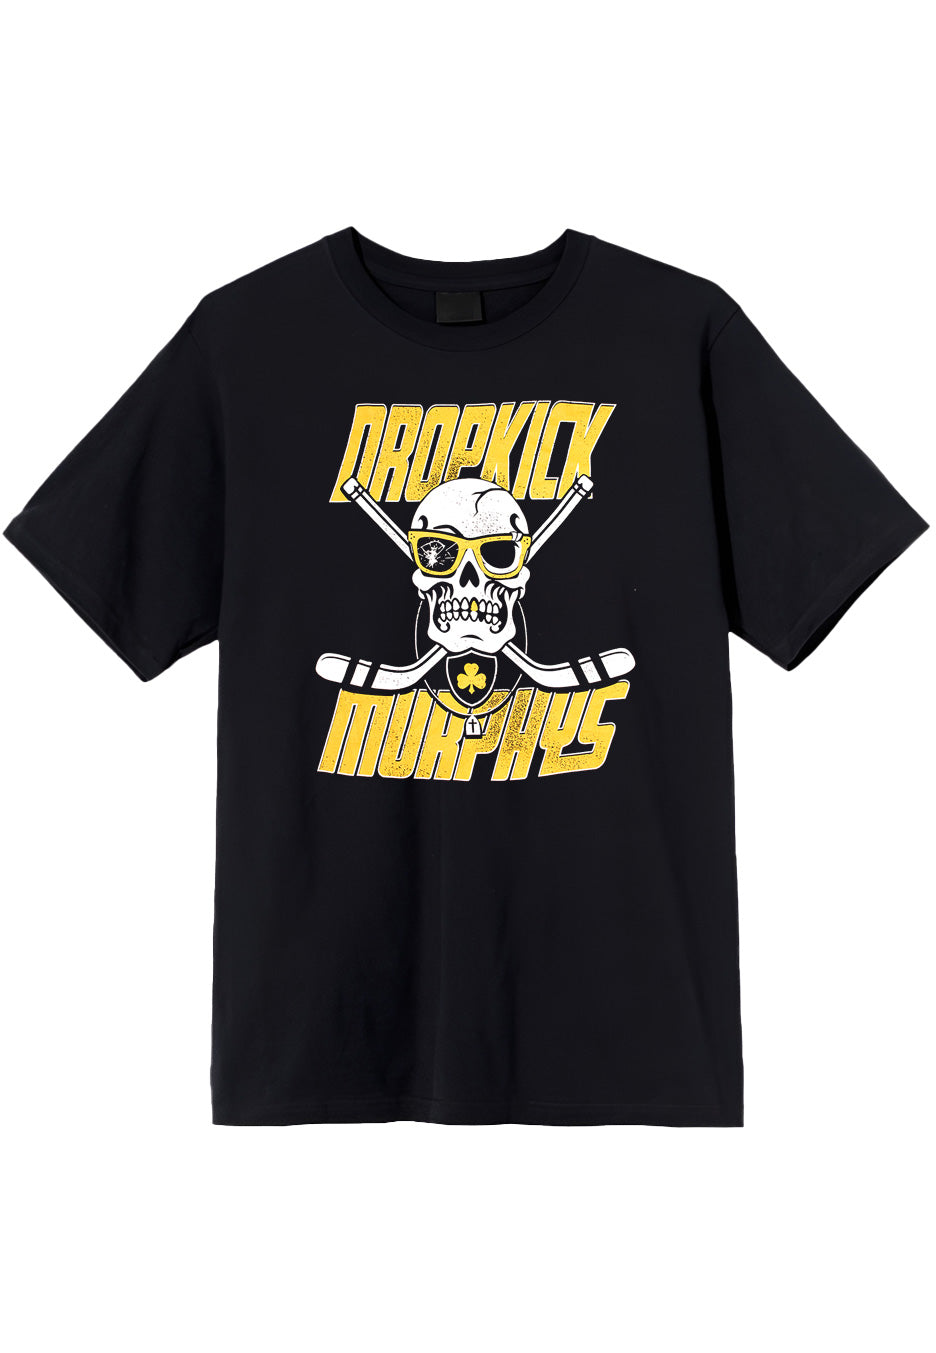 Dropkick Murphys - Slapshot Grunge Black - T-Shirt